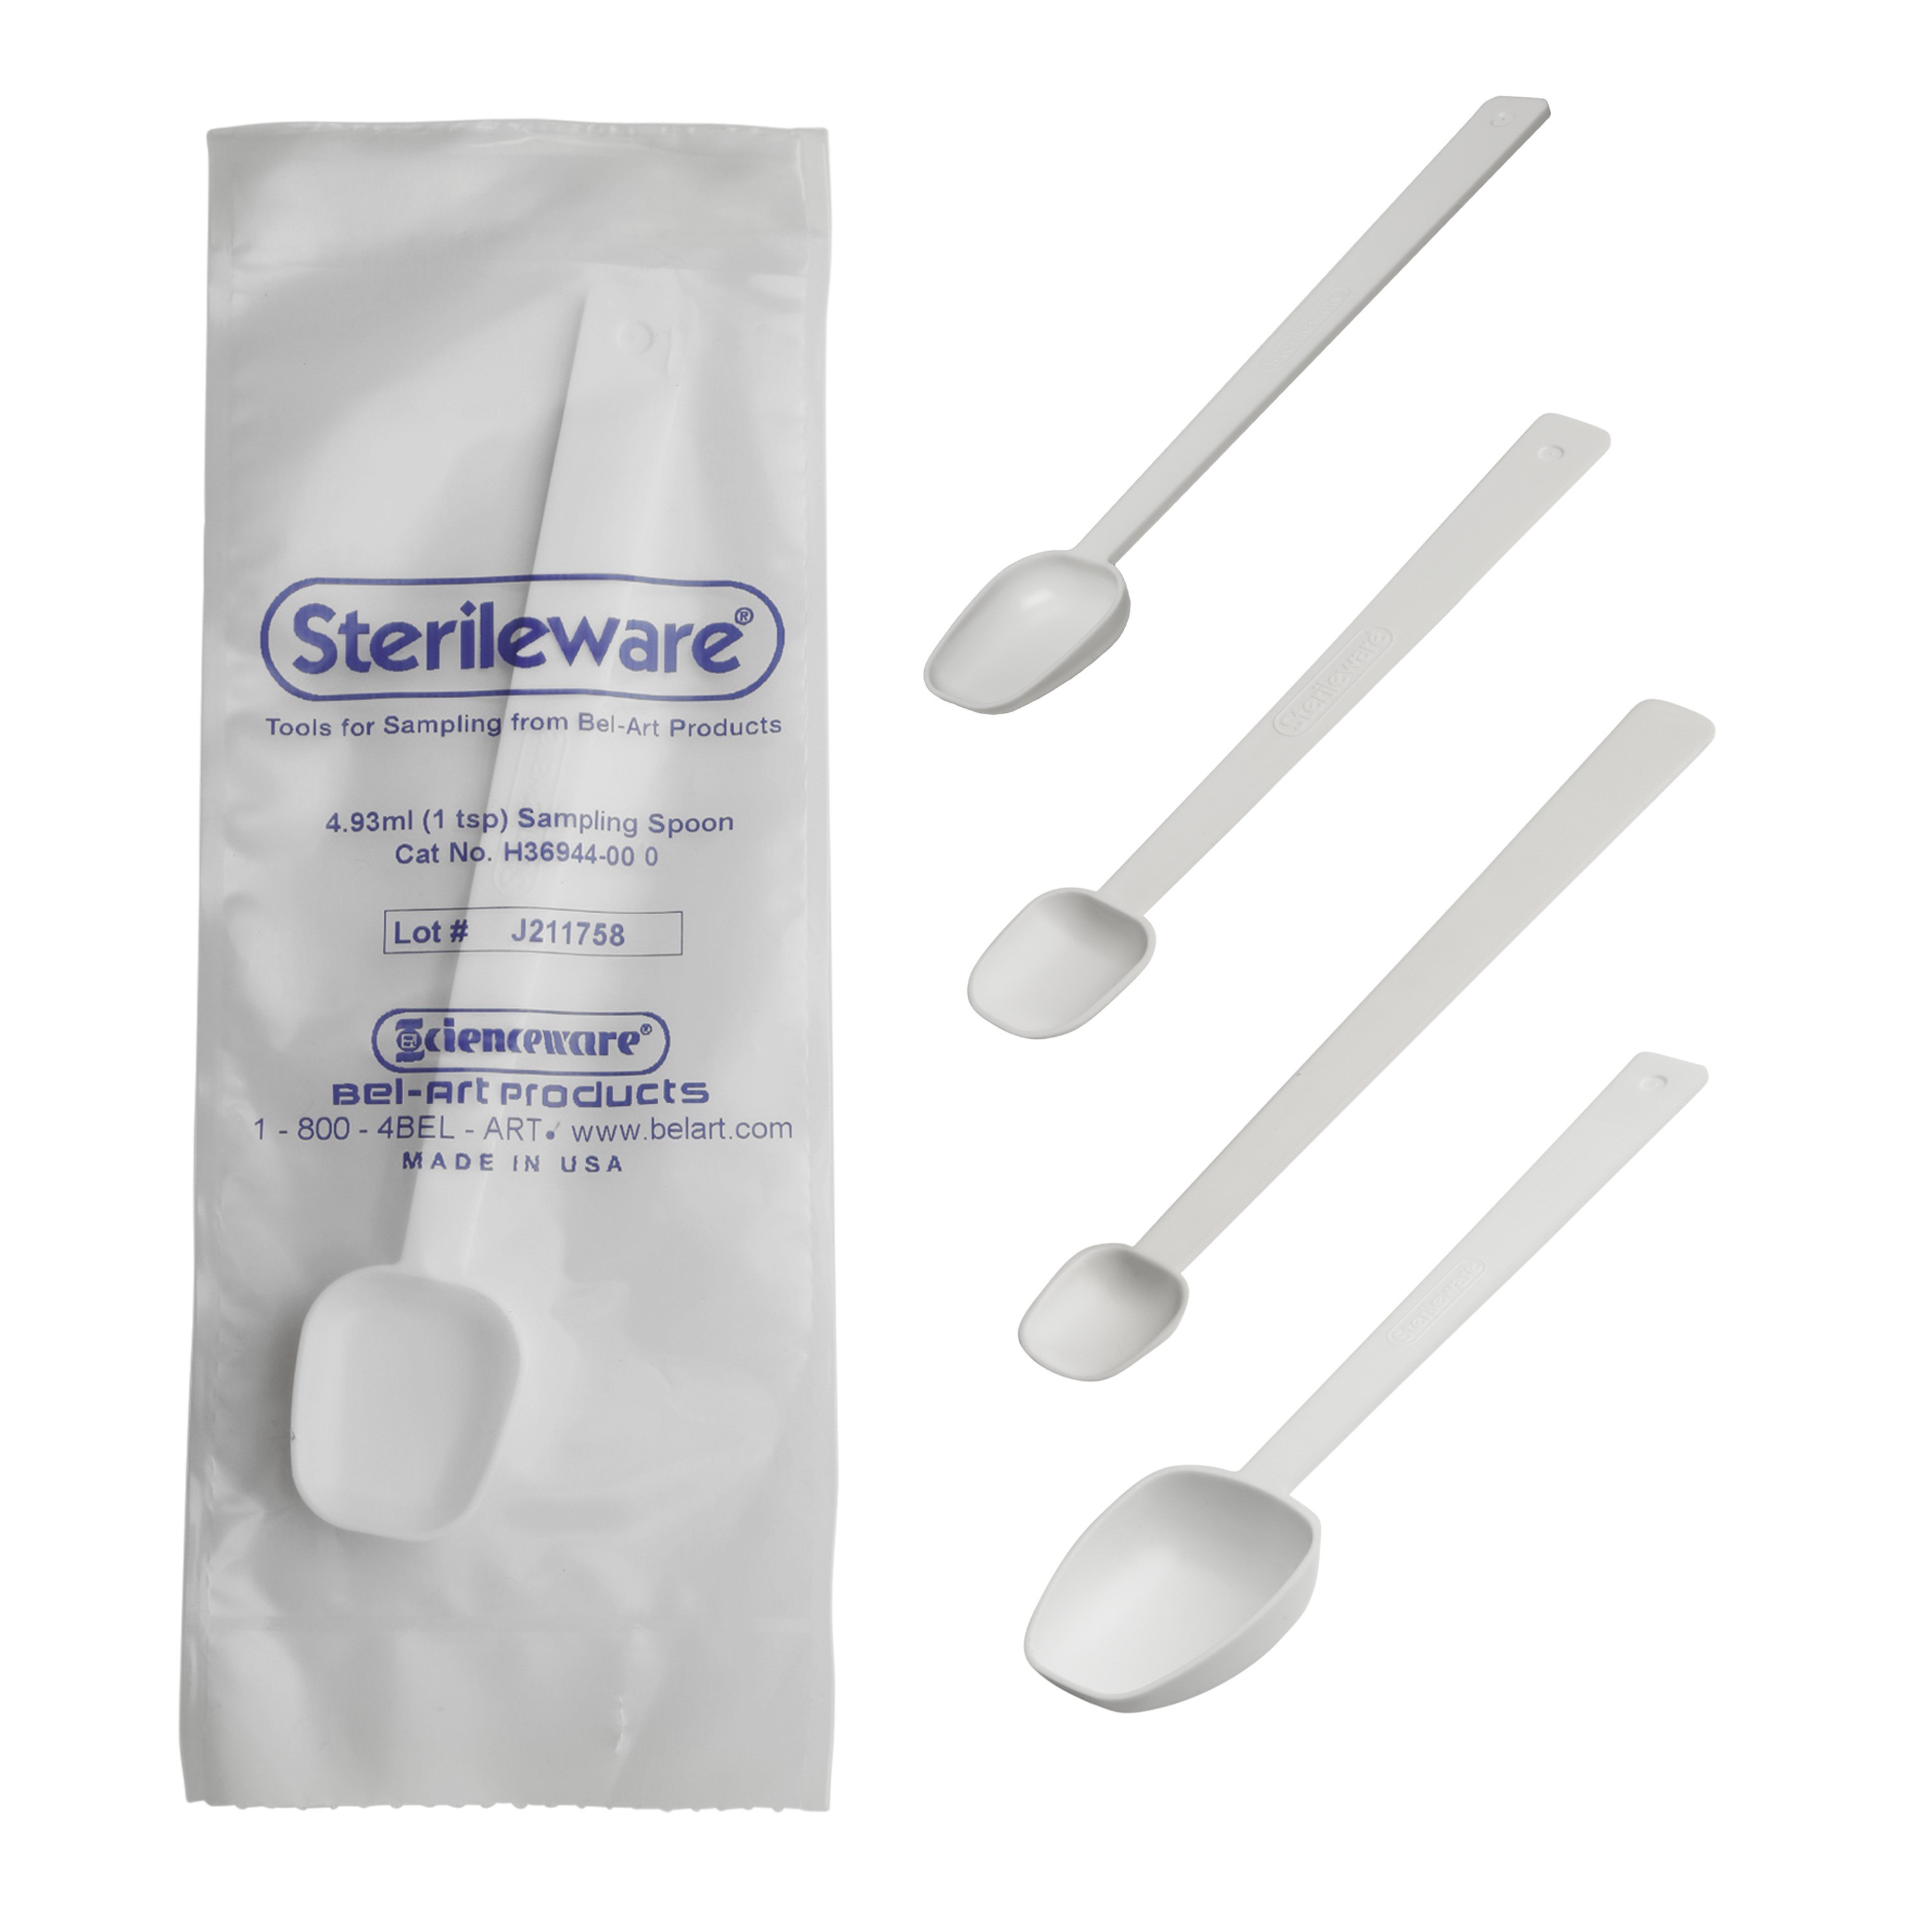 Sterileware Double Bagged Long Handle Sampling Spoons